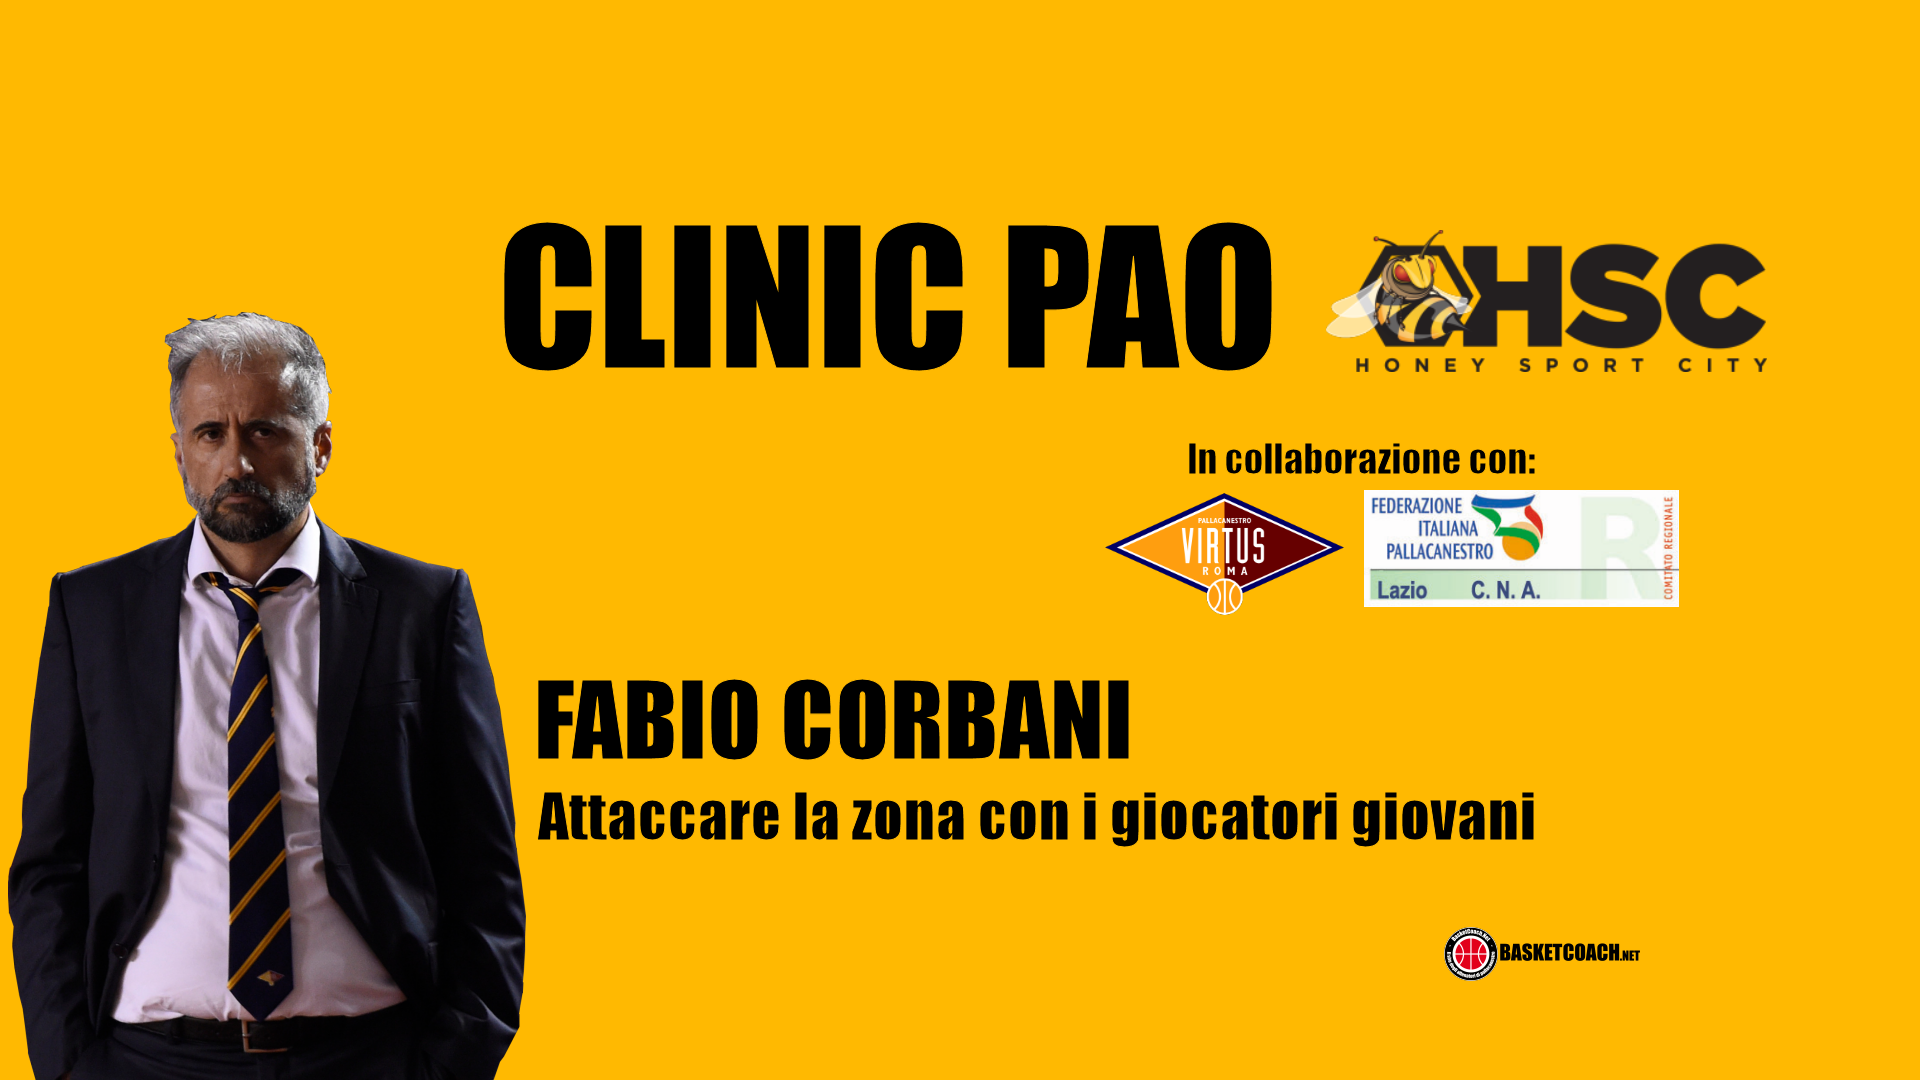 <p>Fabio Corbani - Attacco alla zona per giovani giocatori</p>
